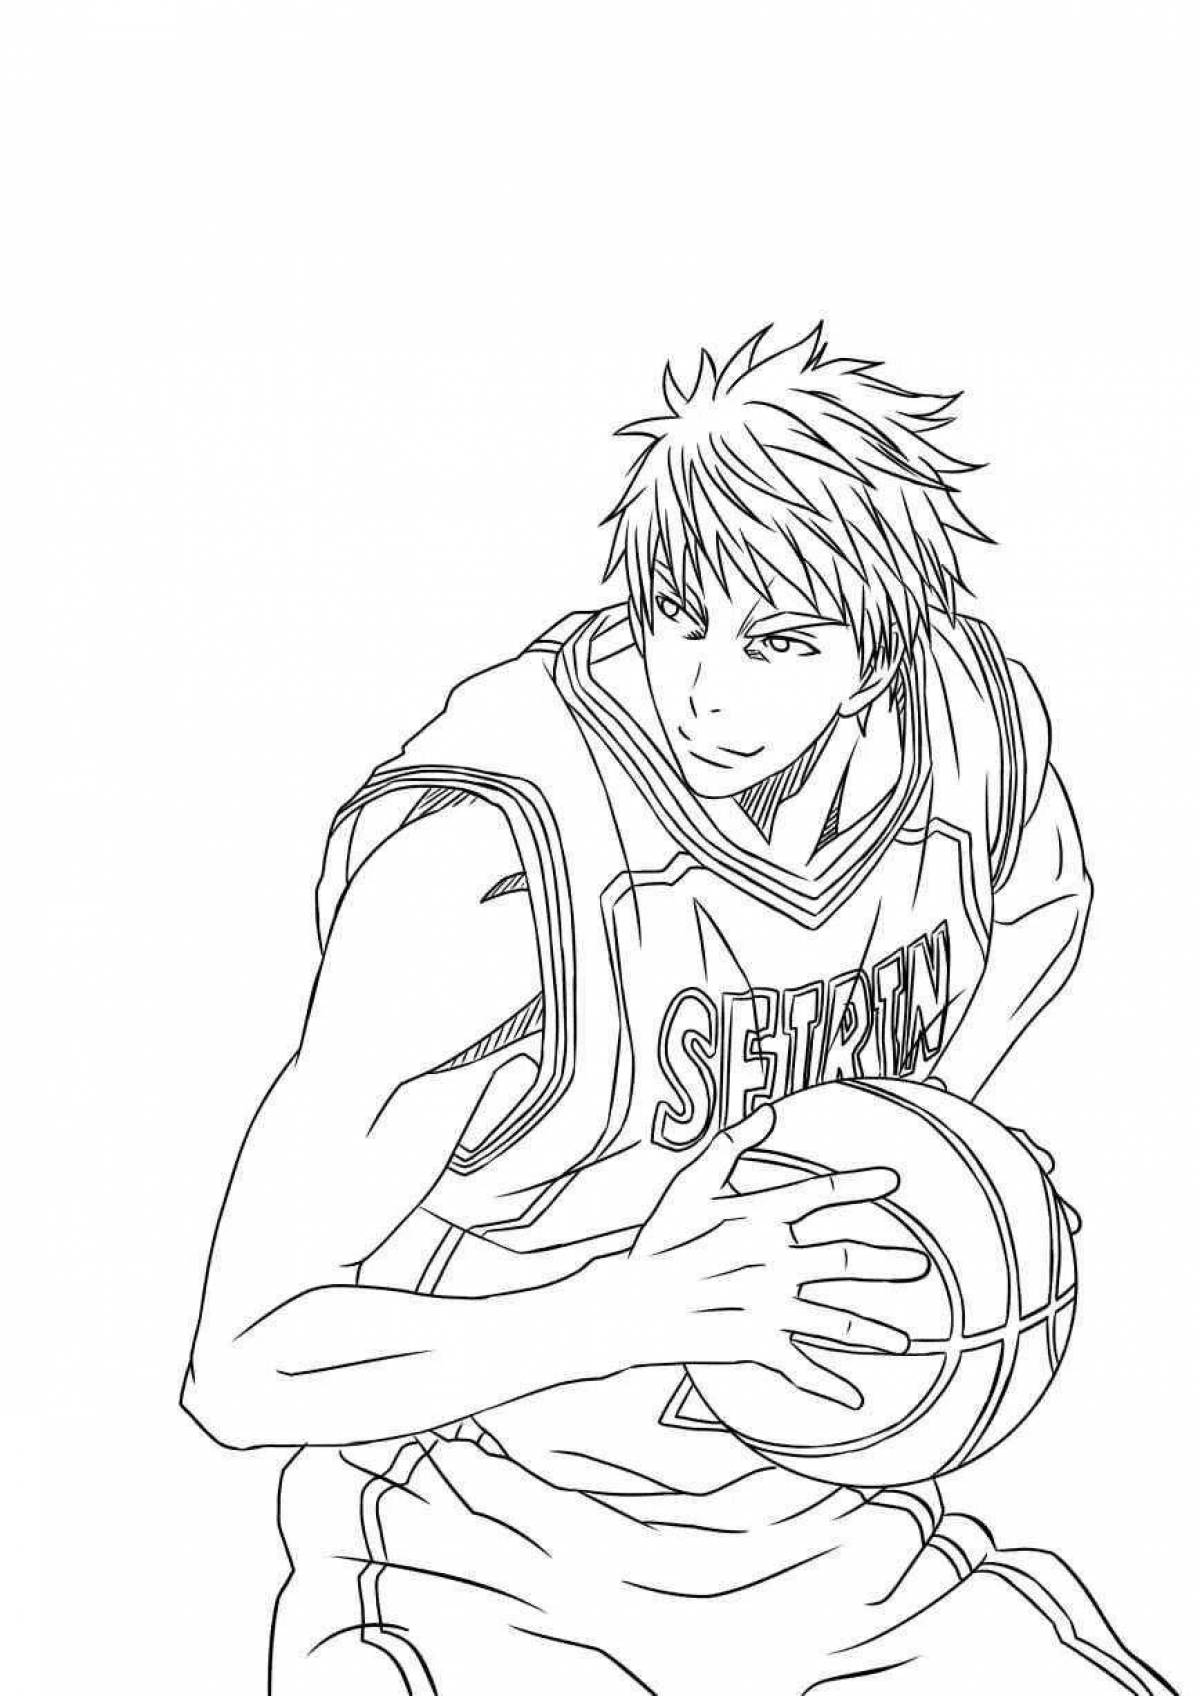 Kuroko's outstanding anime basketball coloring page